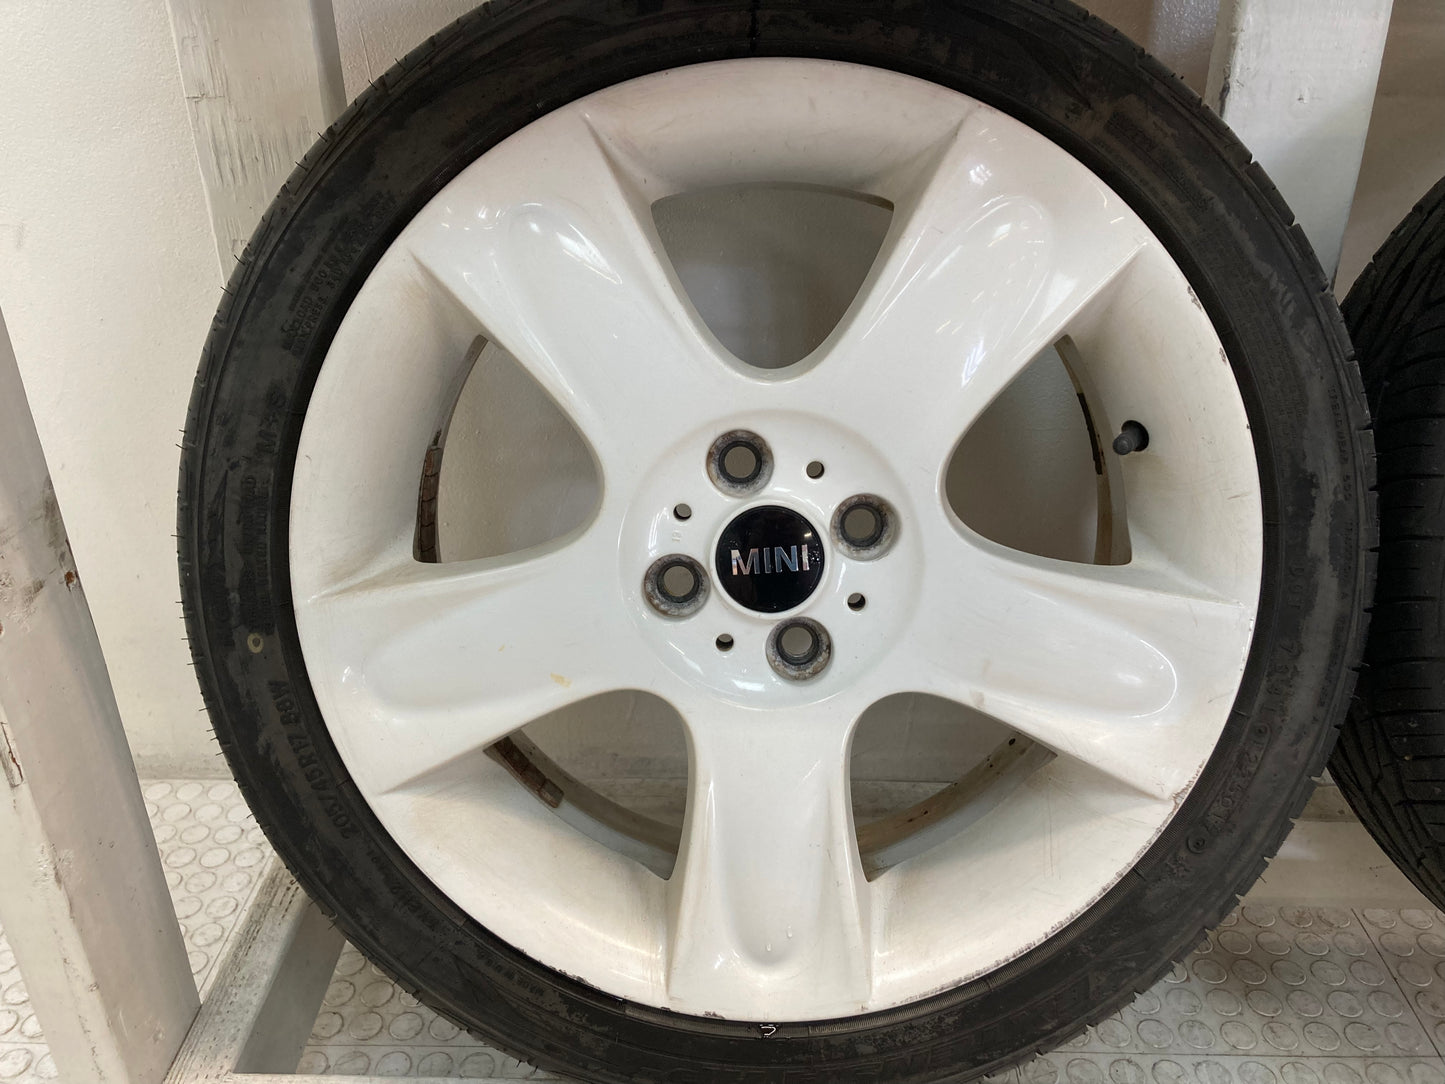 Mini Cooper White 5-Star Spoke Wheels R91 36116784099 02-15 R5x 423